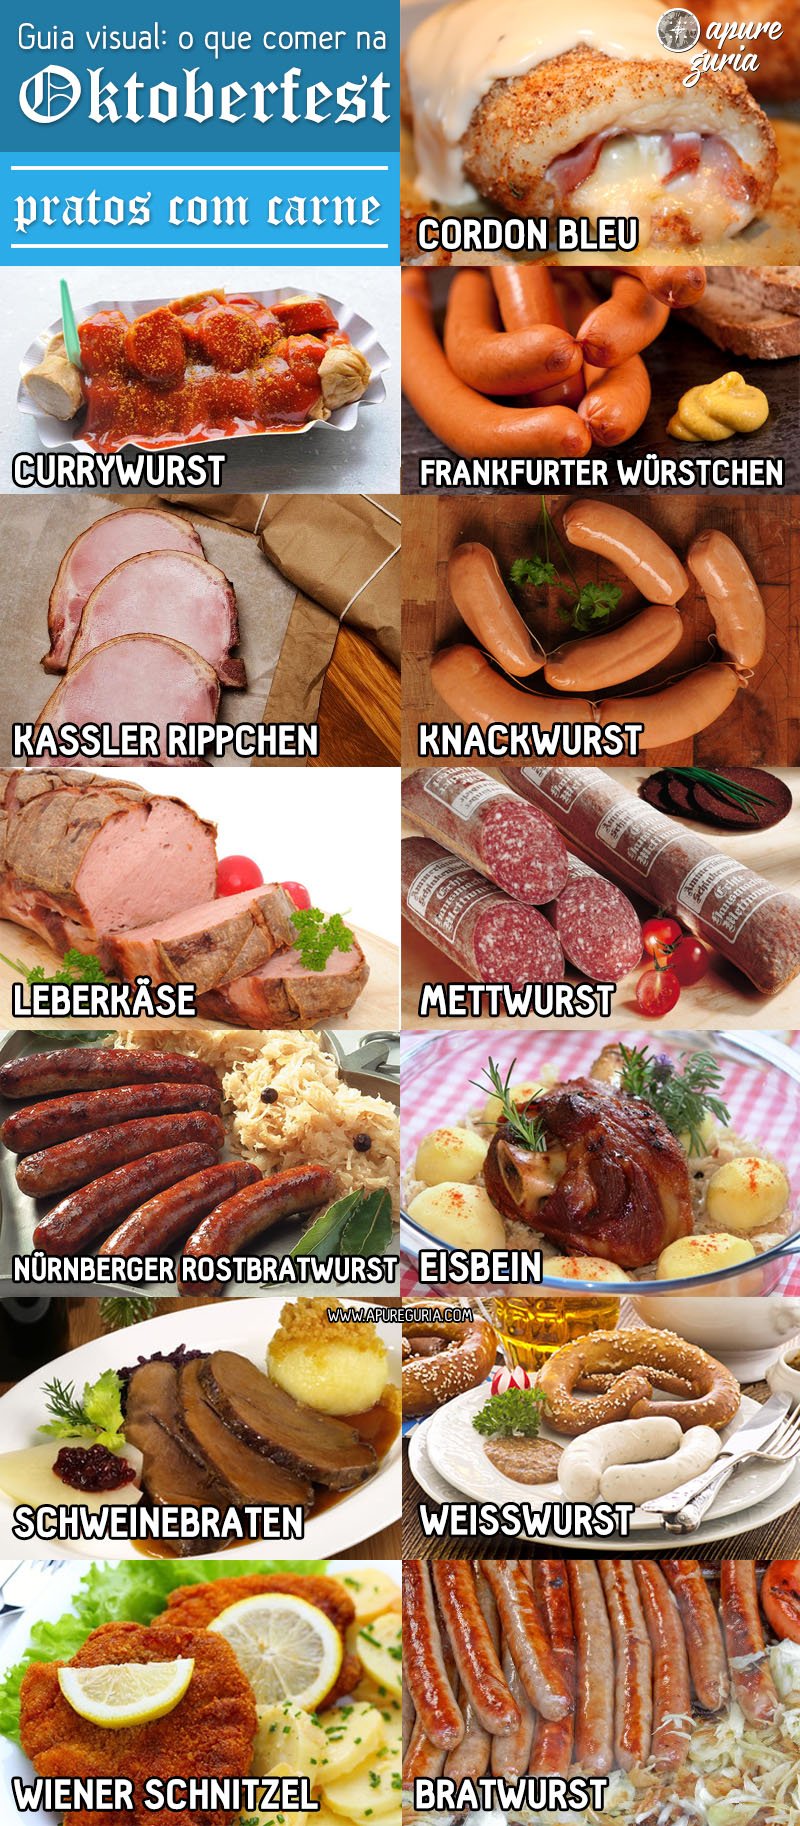 guia visual o que comer na oktoberfest pratos com carne bratwurst cordon bleu